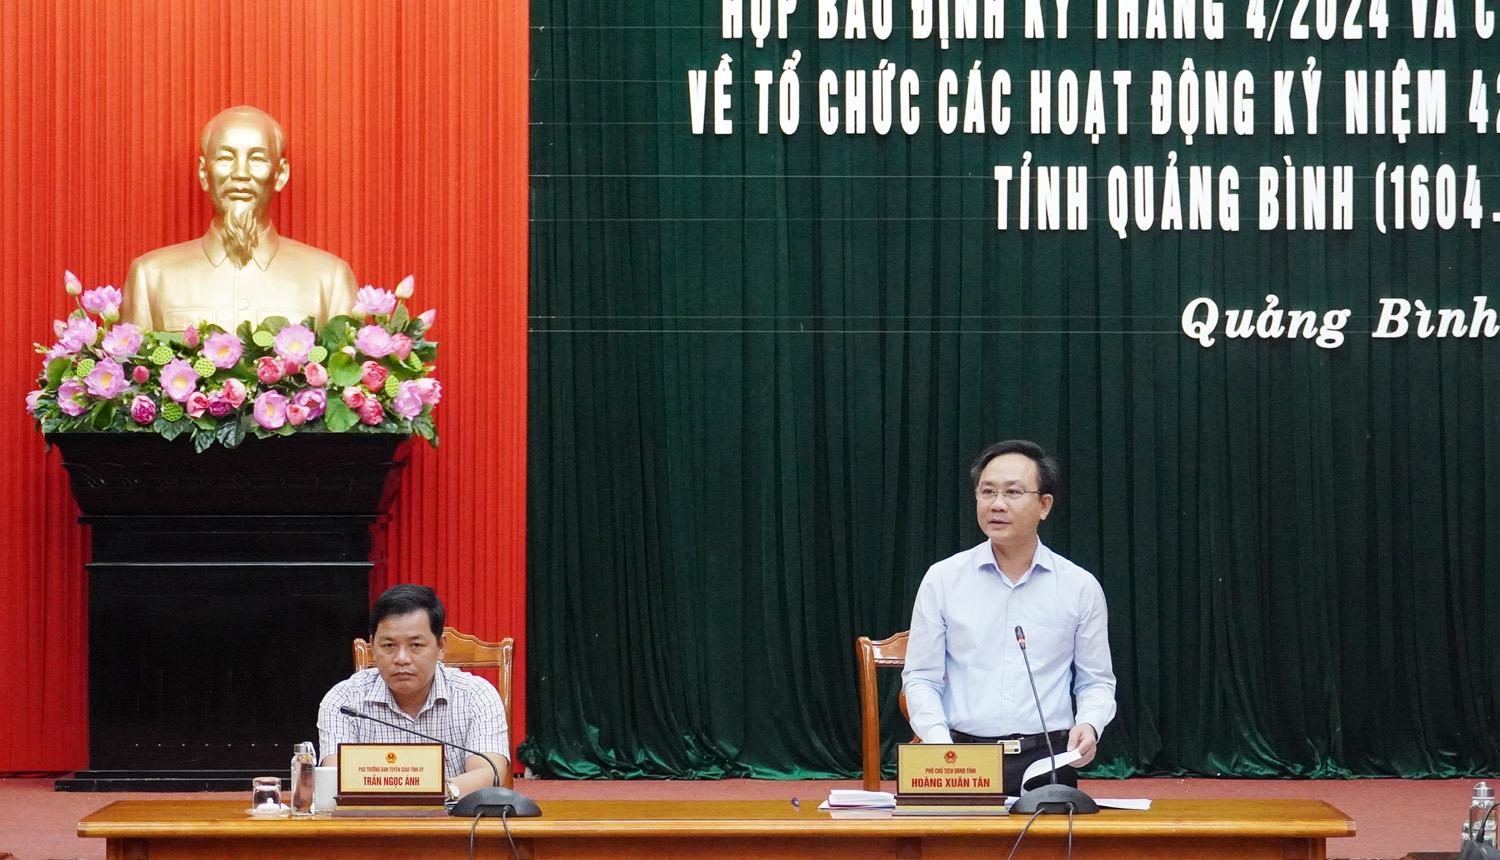 Đồng chí Phó Chủ tịch UBND tỉnh Hoàng Xuân Tân phát biểu kết luận  buổi họp báo định kỳ tháng 4.